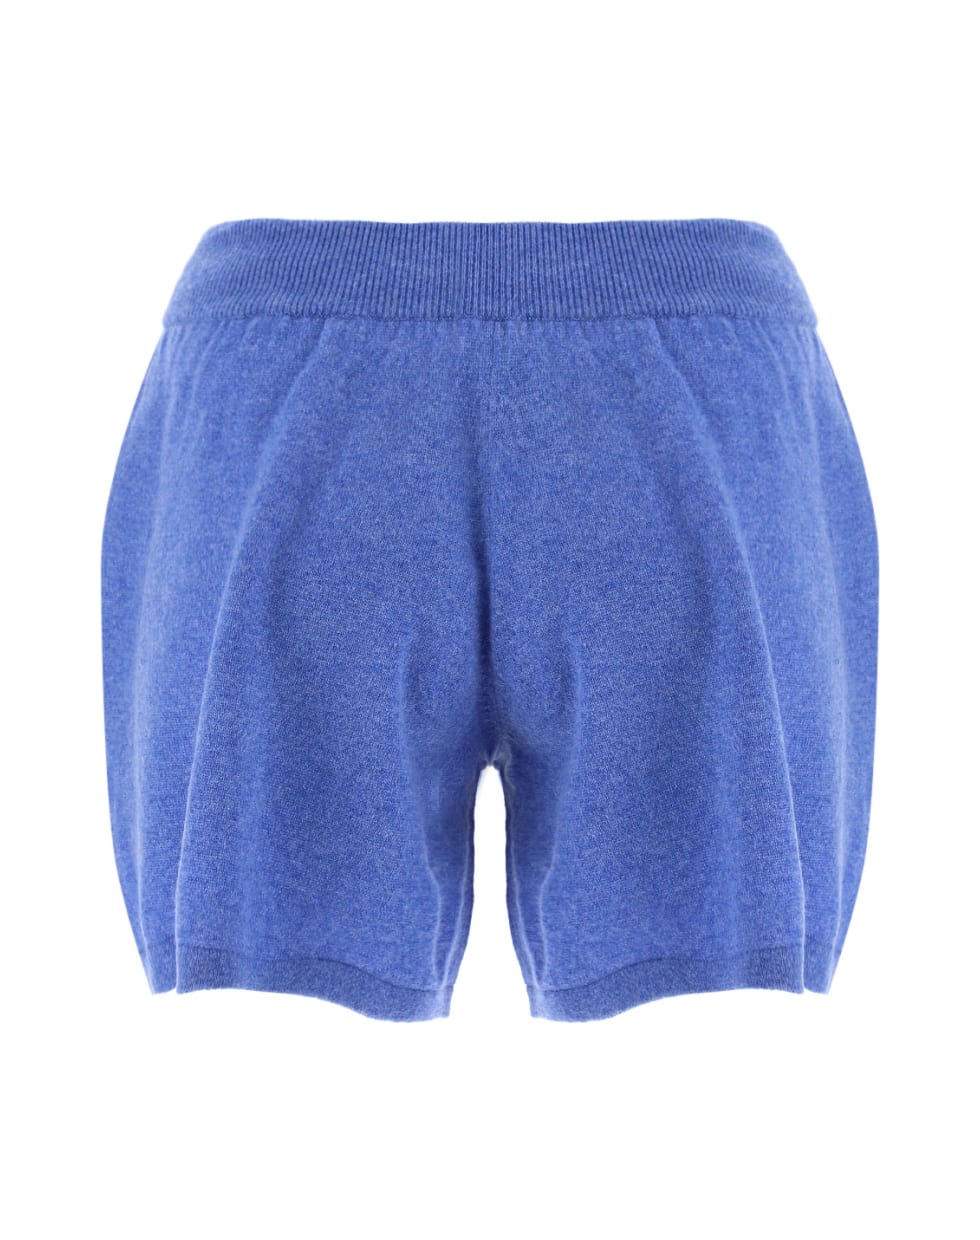 Lisa Yang Gio Shorts - Denim blue